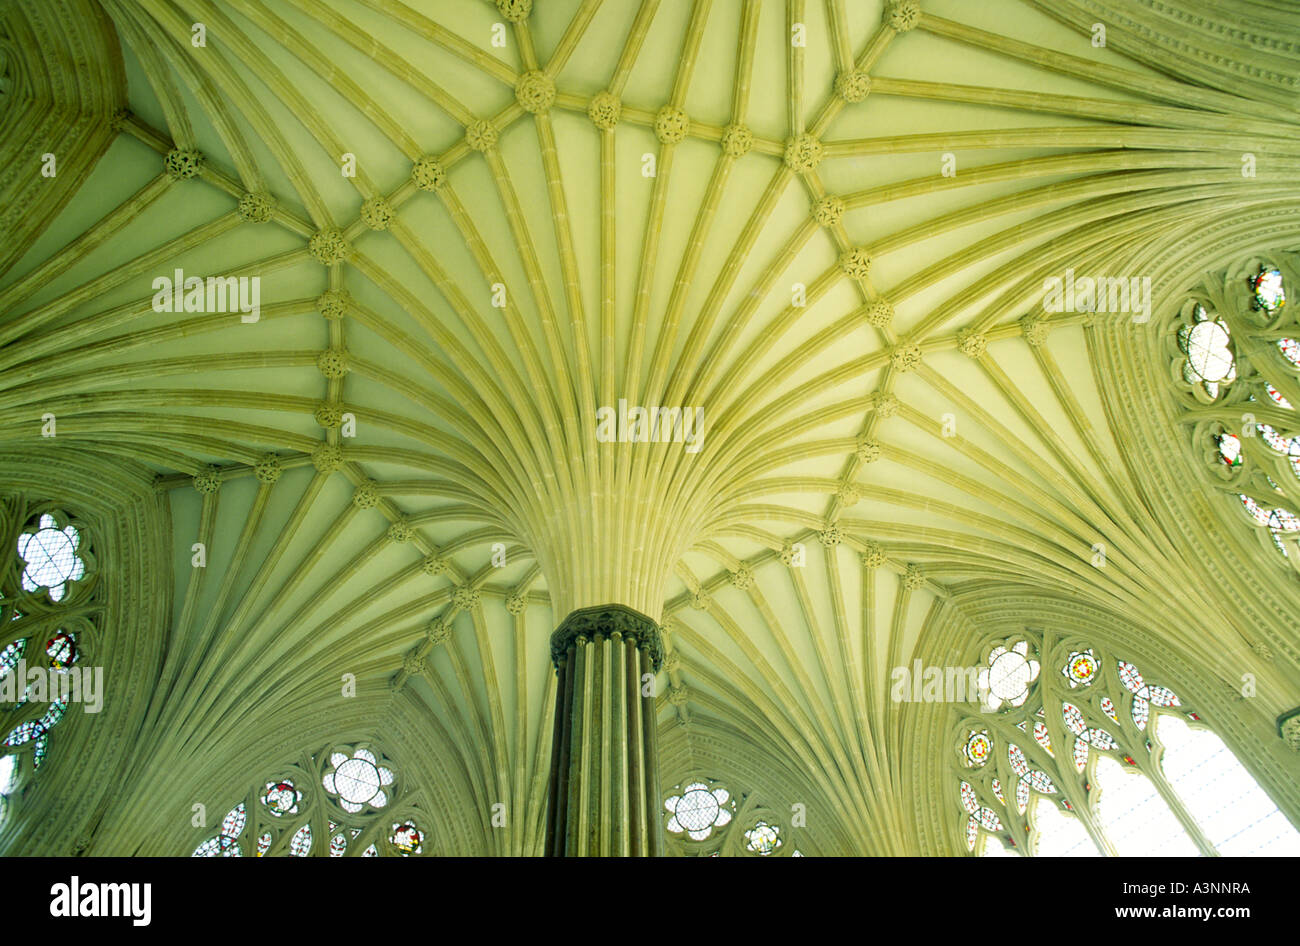 Stein-Fan Gewölbe und Fenster von der Decke der Kapitelsaal der Kathedrale von Wells, Somerset, England. Stockfoto